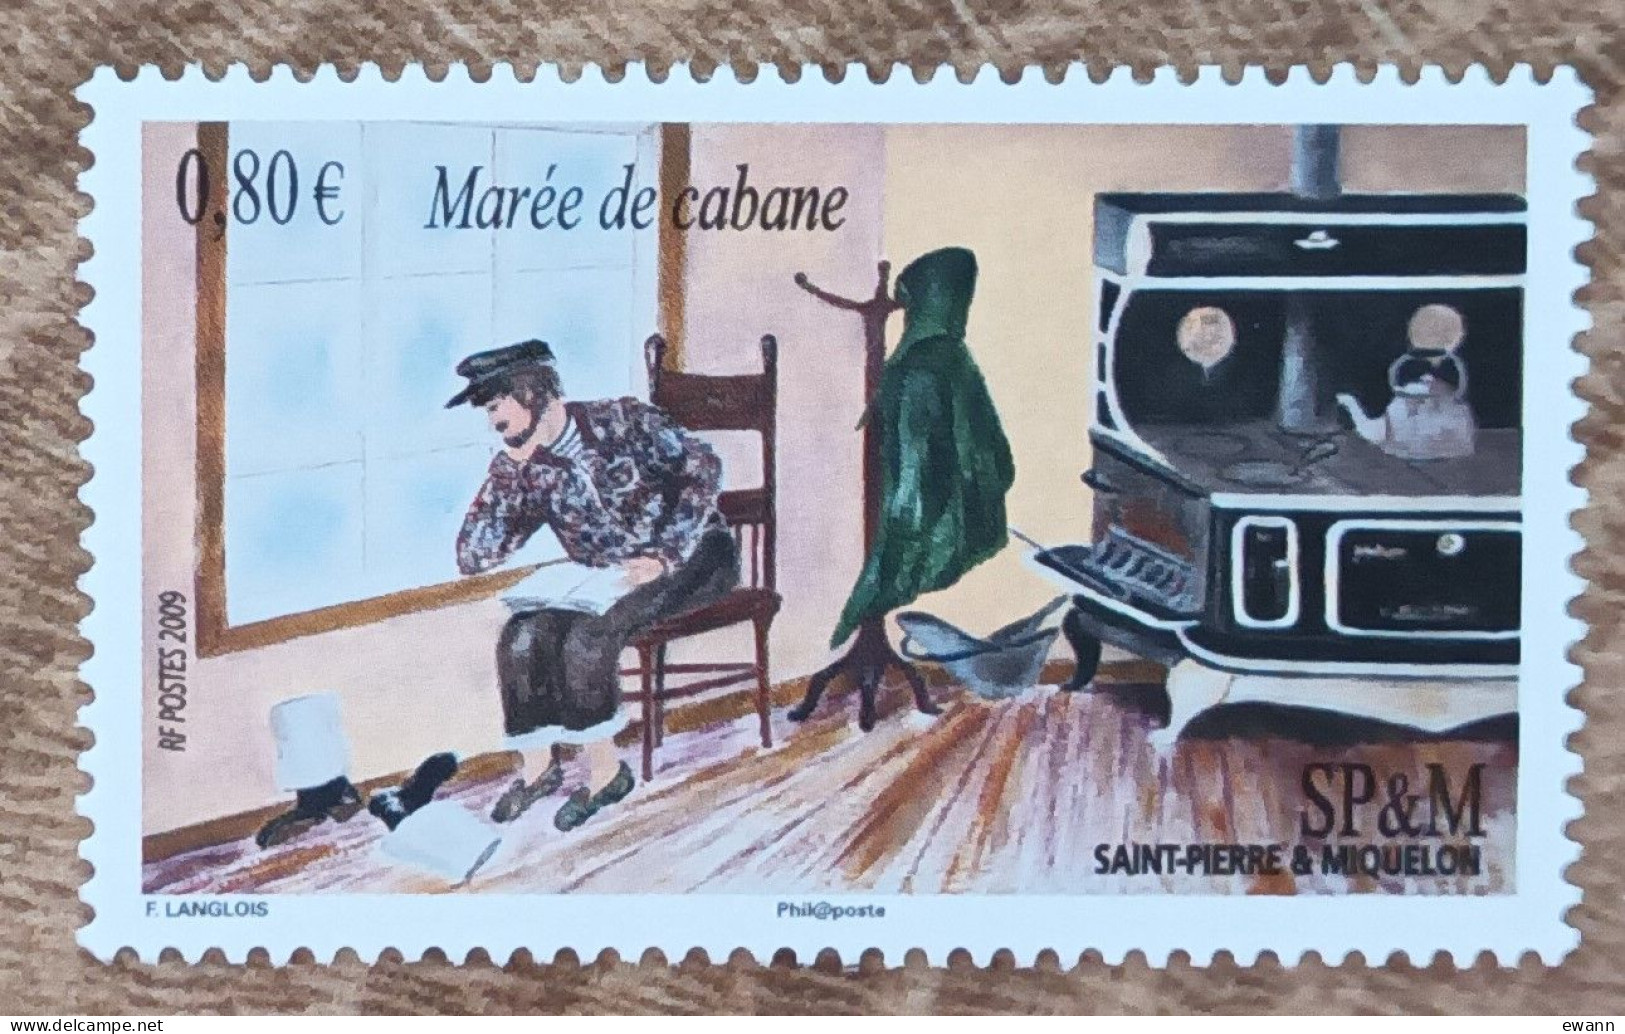 Saint Pierre Et Miquelon - YT N°959 - Expressions Locales / Marée De Cabane - 2009 - Neuf - Ongebruikt